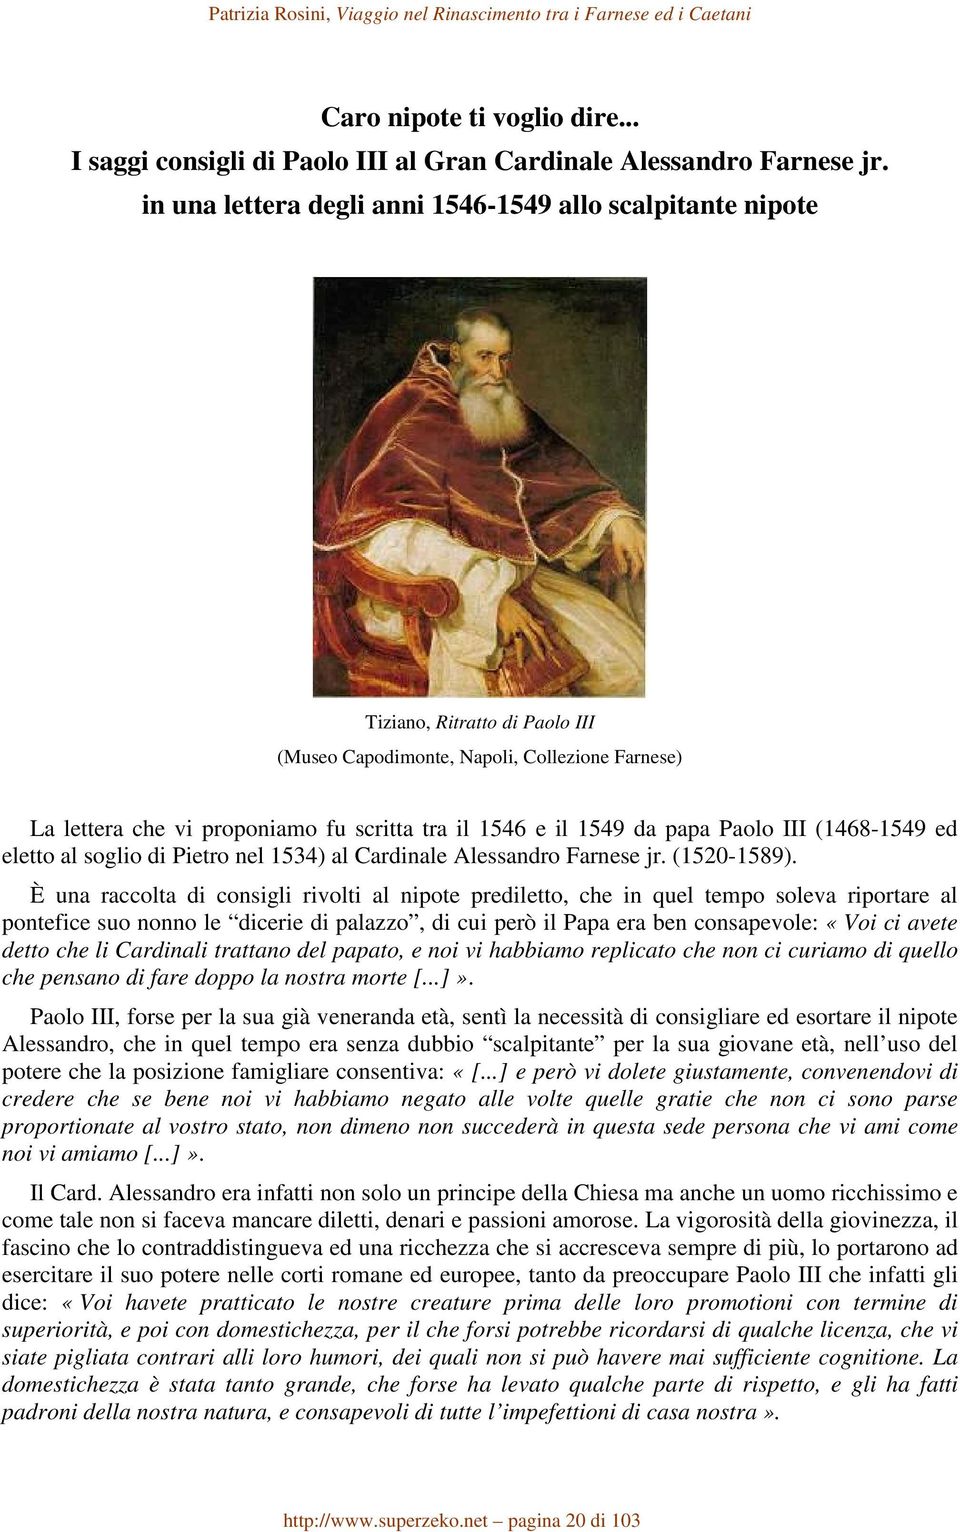 1549 da papa Paolo III (1468-1549 ed eletto al soglio di Pietro nel 1534) al Cardinale Alessandro Farnese jr. (1520-1589).